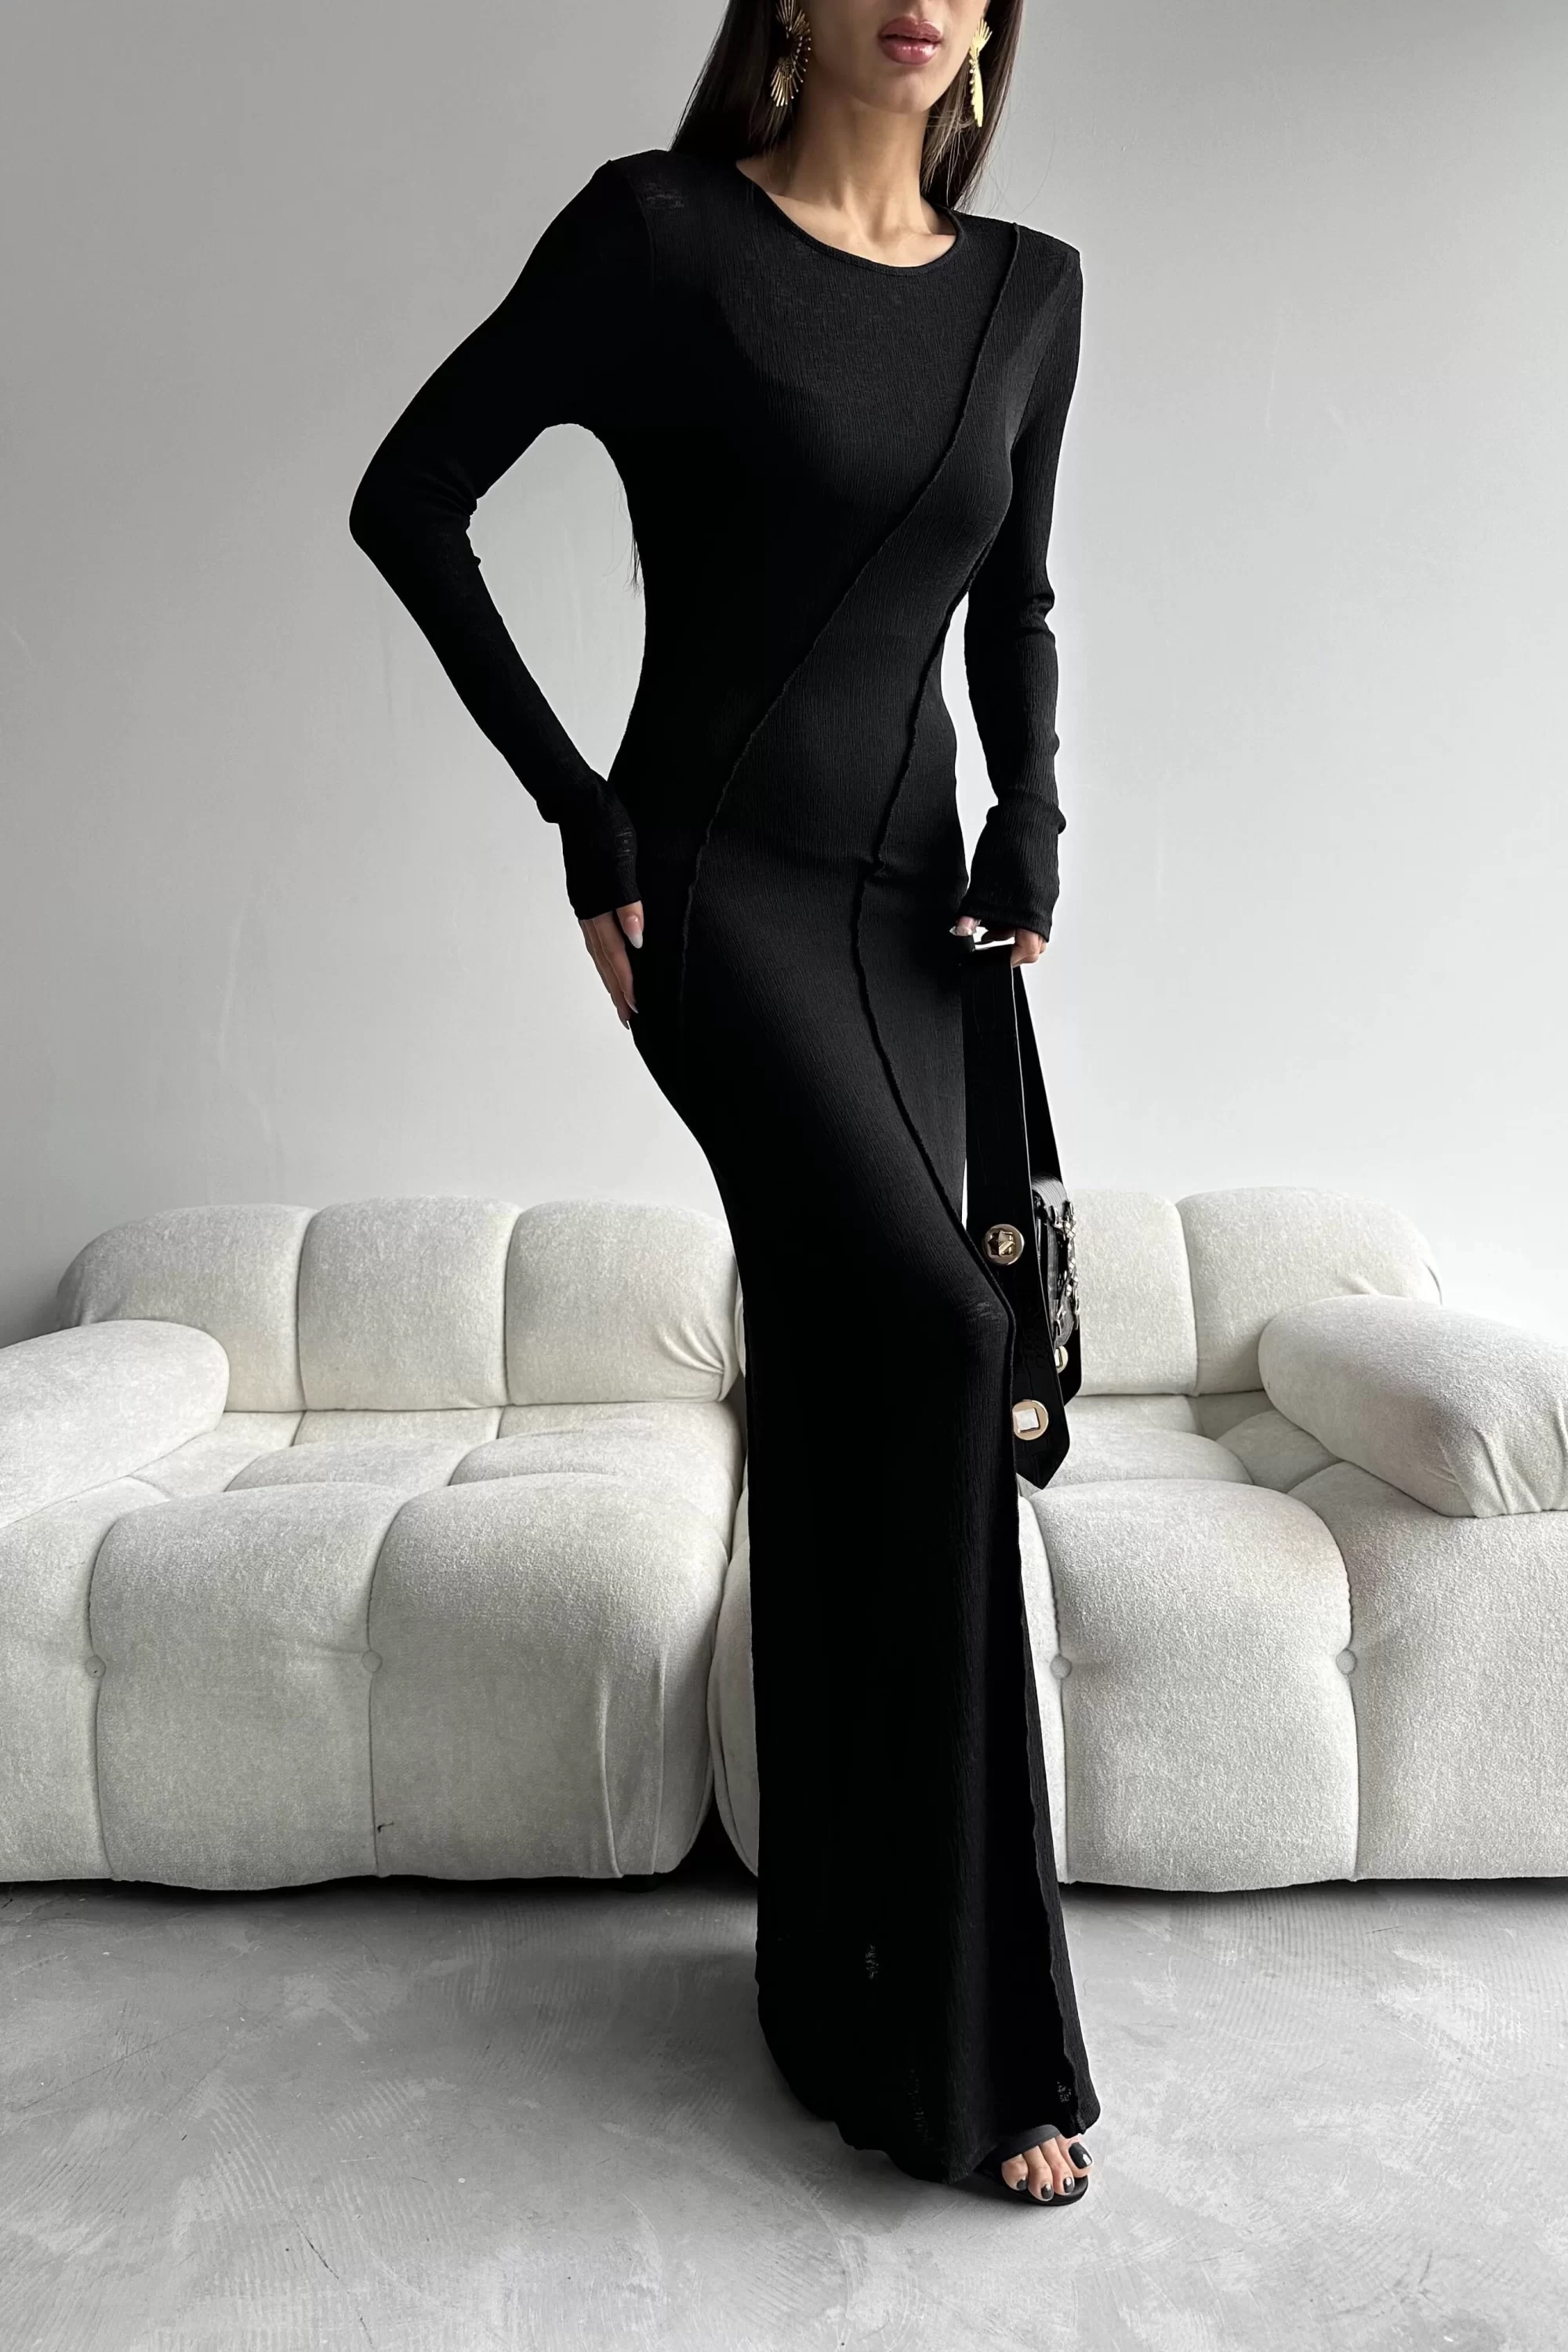 Kadın Siyah Dekolte Detay Dikişli Elbise 1007-4624